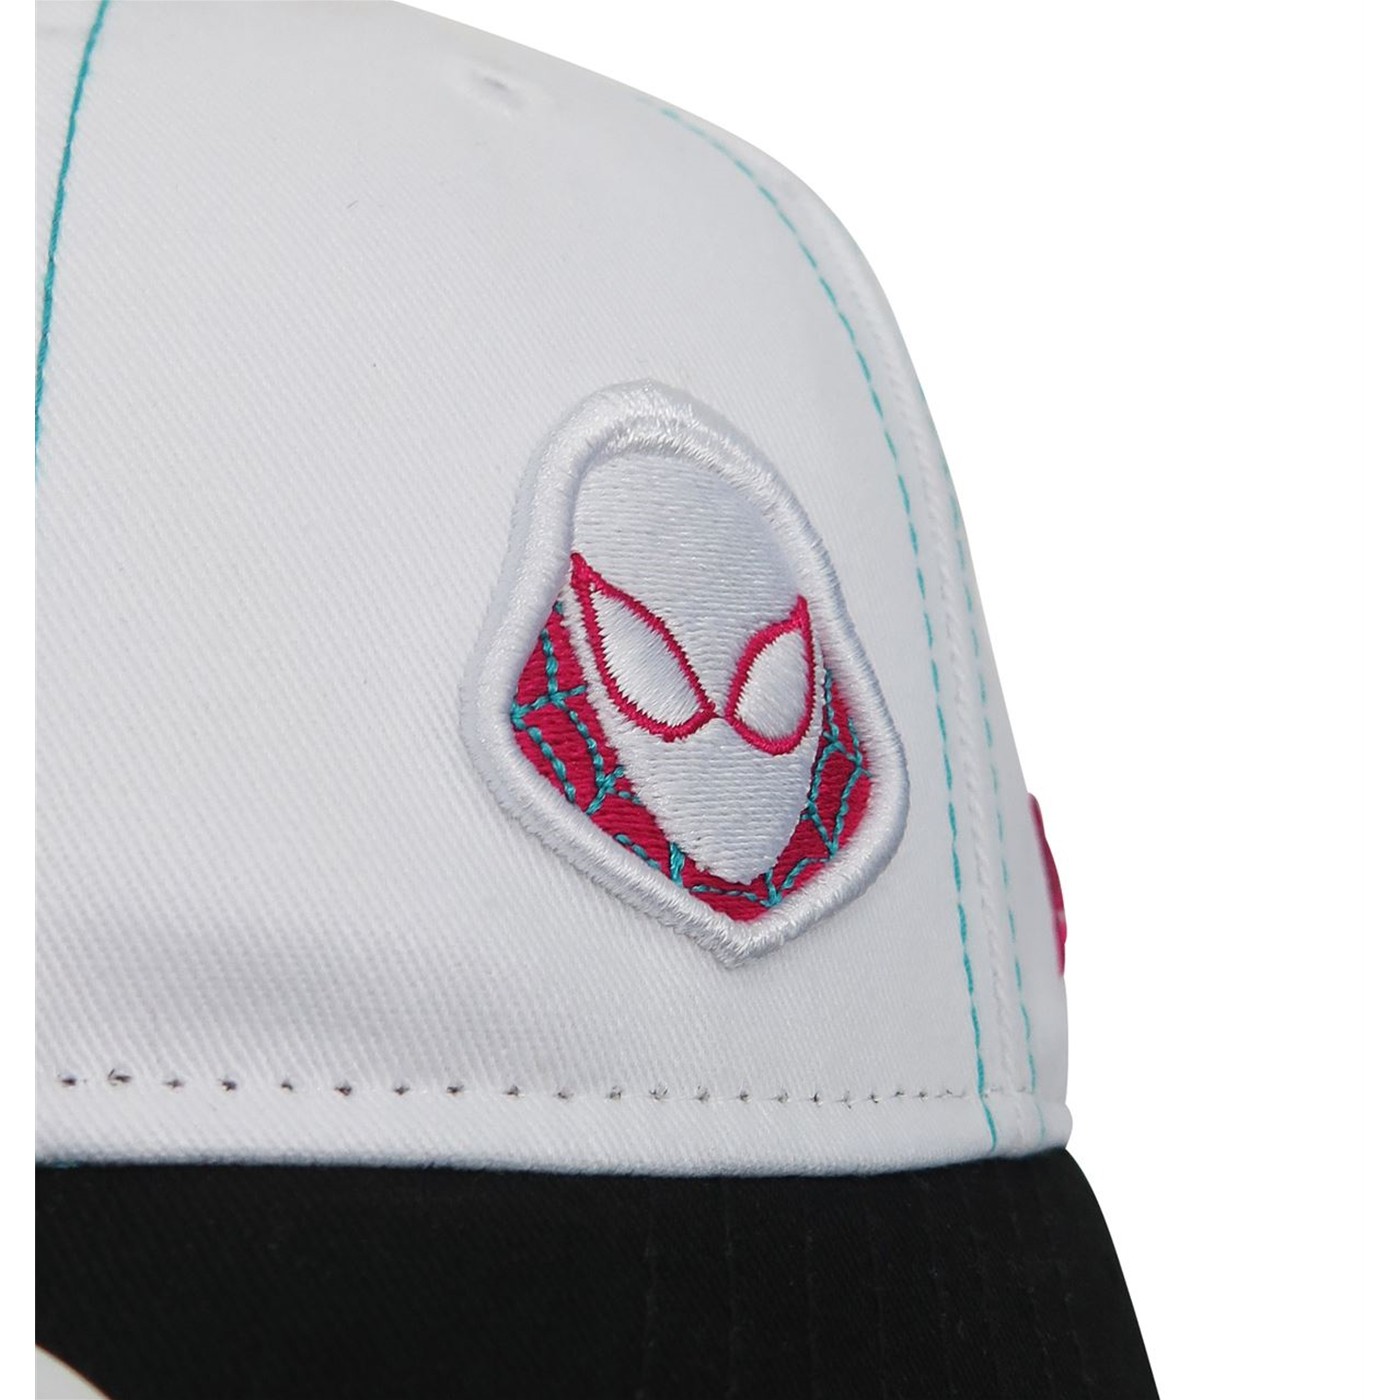 Spider-Gwen Women's 9Twenty Adjustable Hat